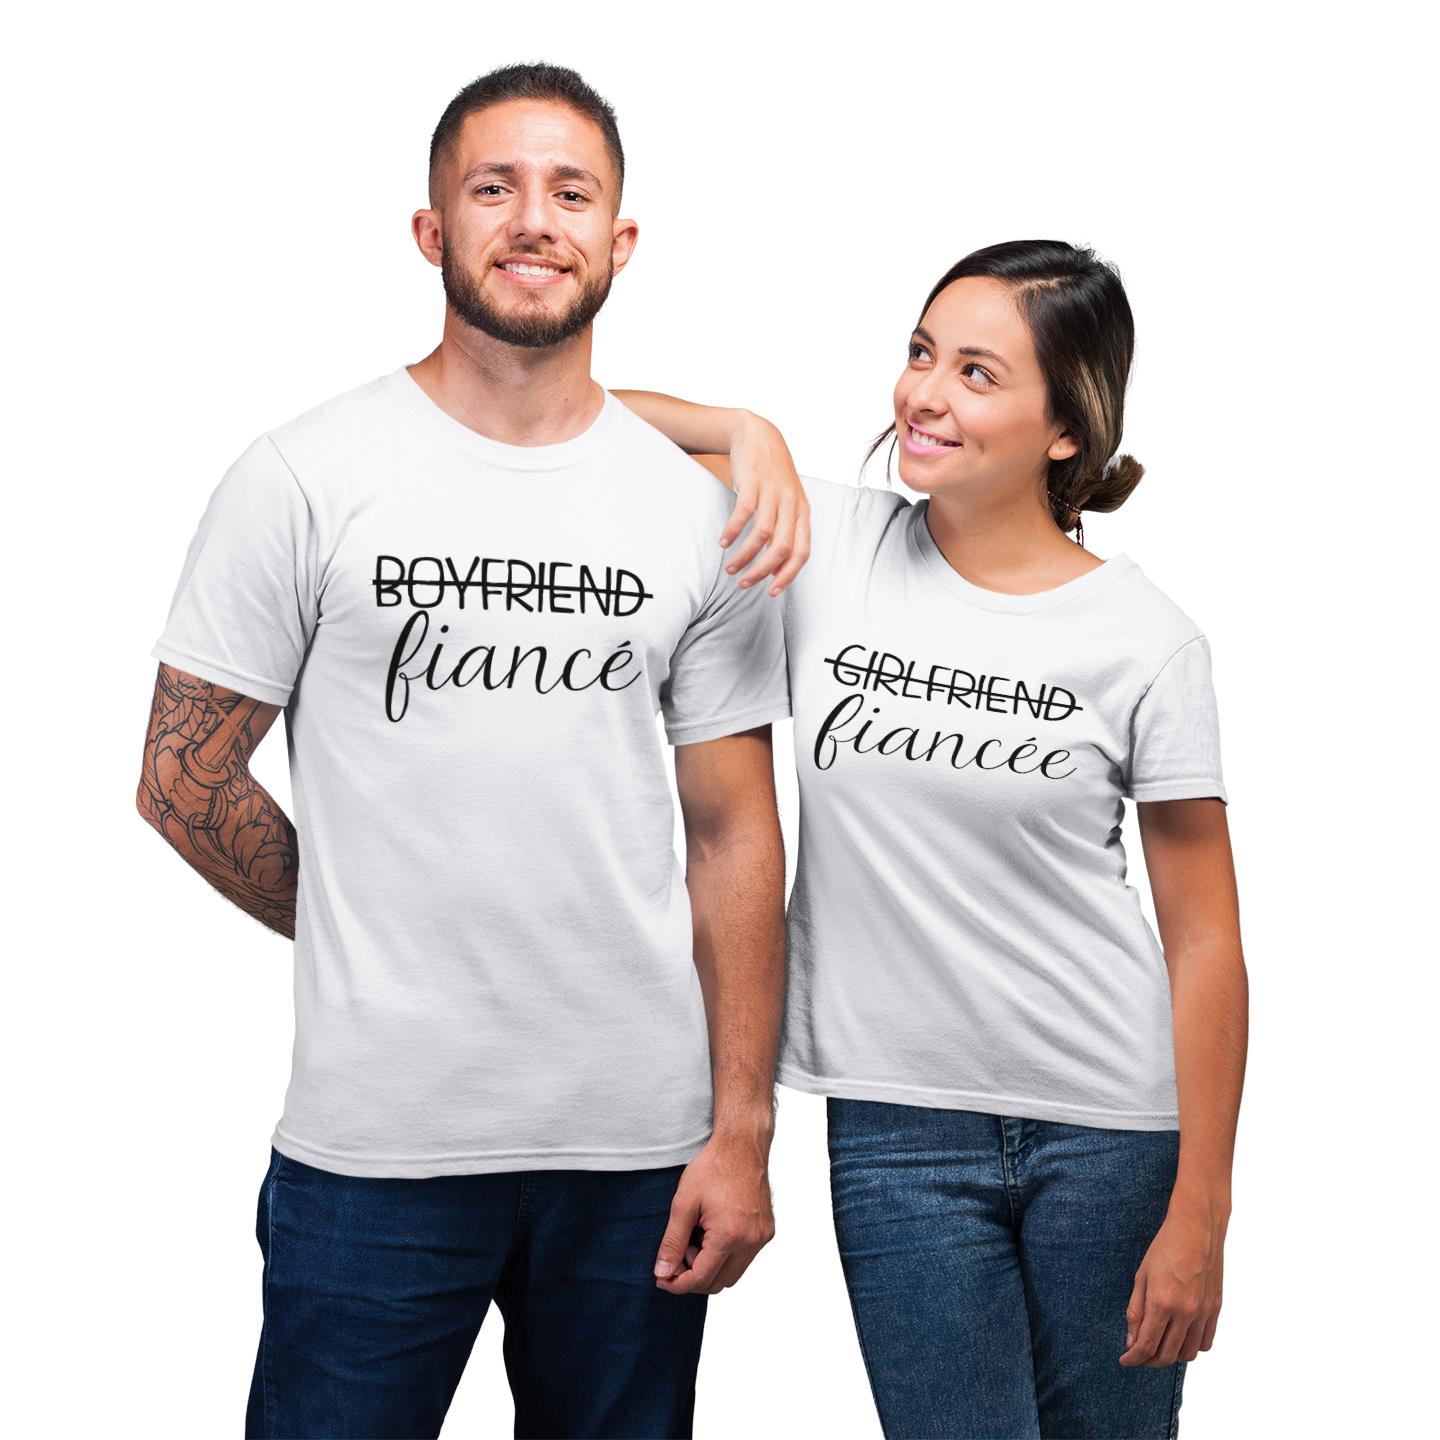 Boyfriend Girlfriend Become Fiance Shirt For Couple Lover T-shirt